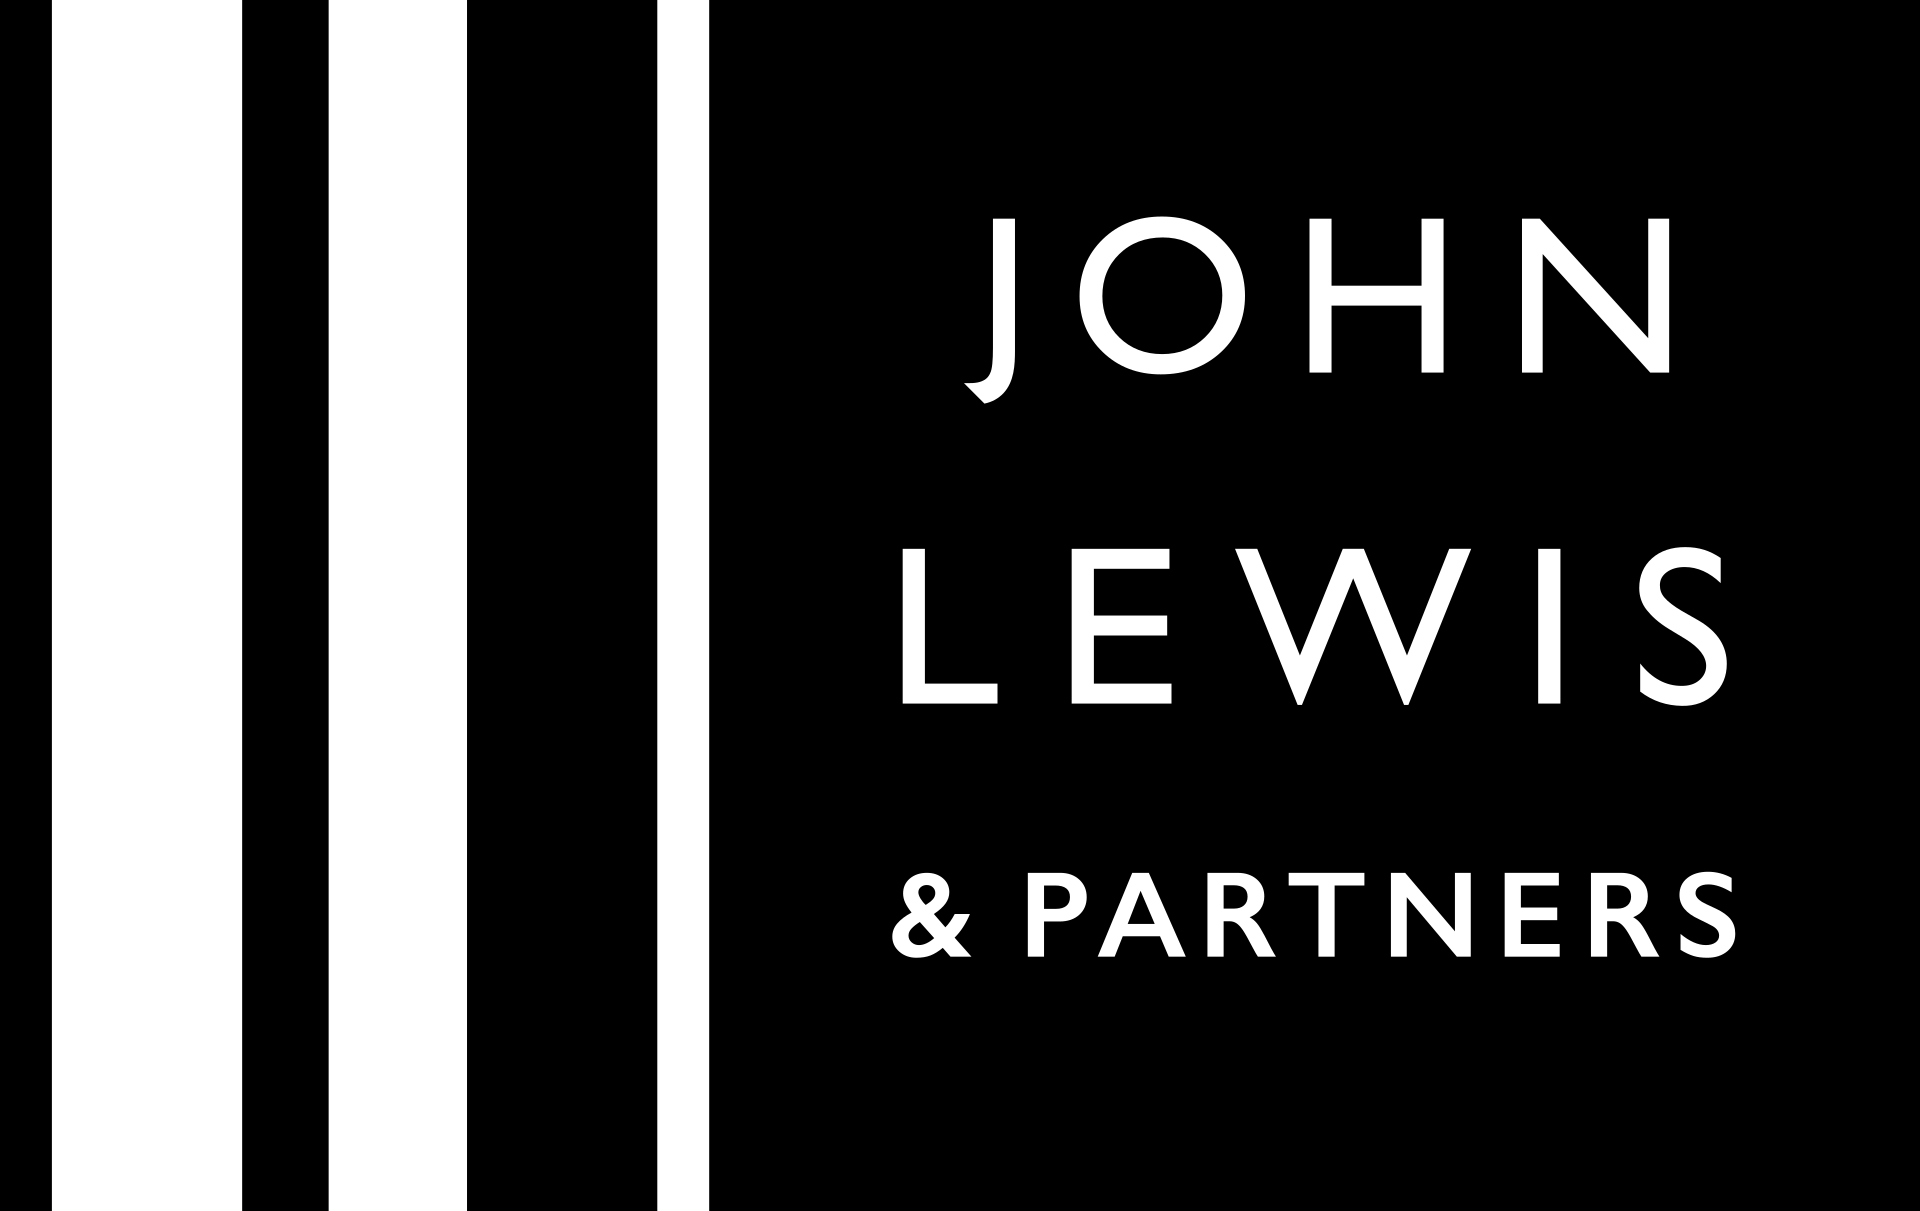 John-Lewis-logo